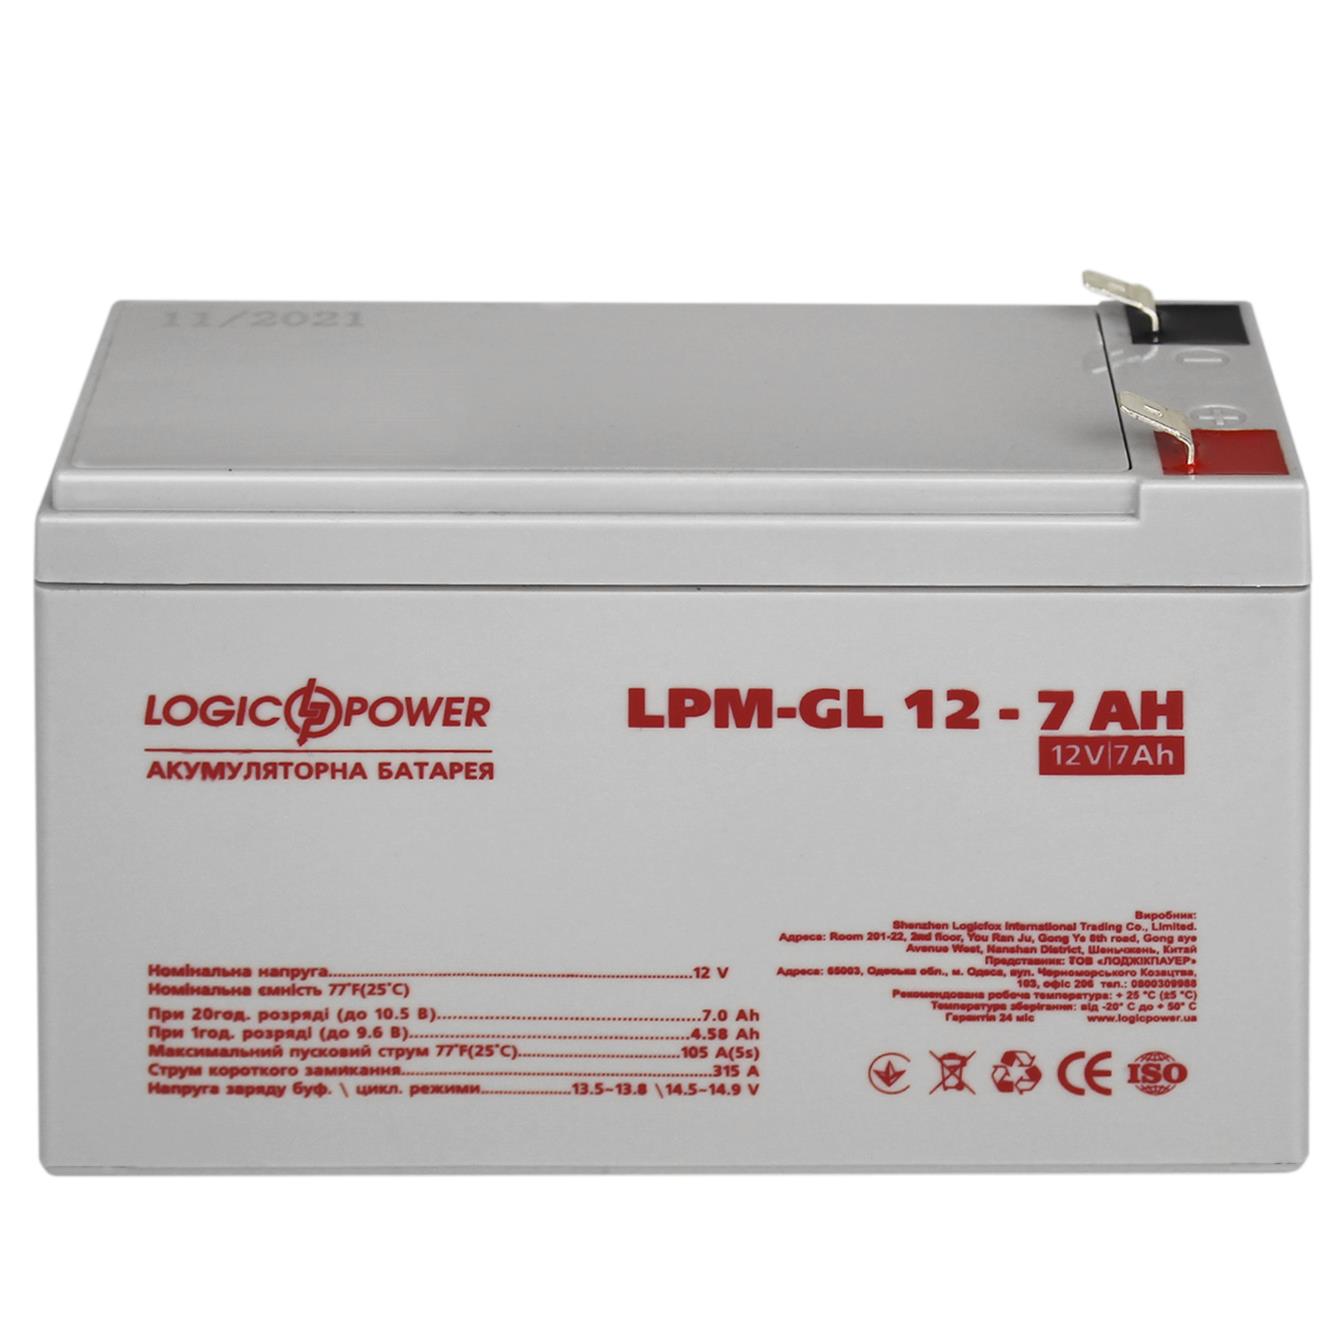 Аккумулятор гелевый LogicPower LPM-GL 12V - 7 Ah (6560) отзывы - изображения 5